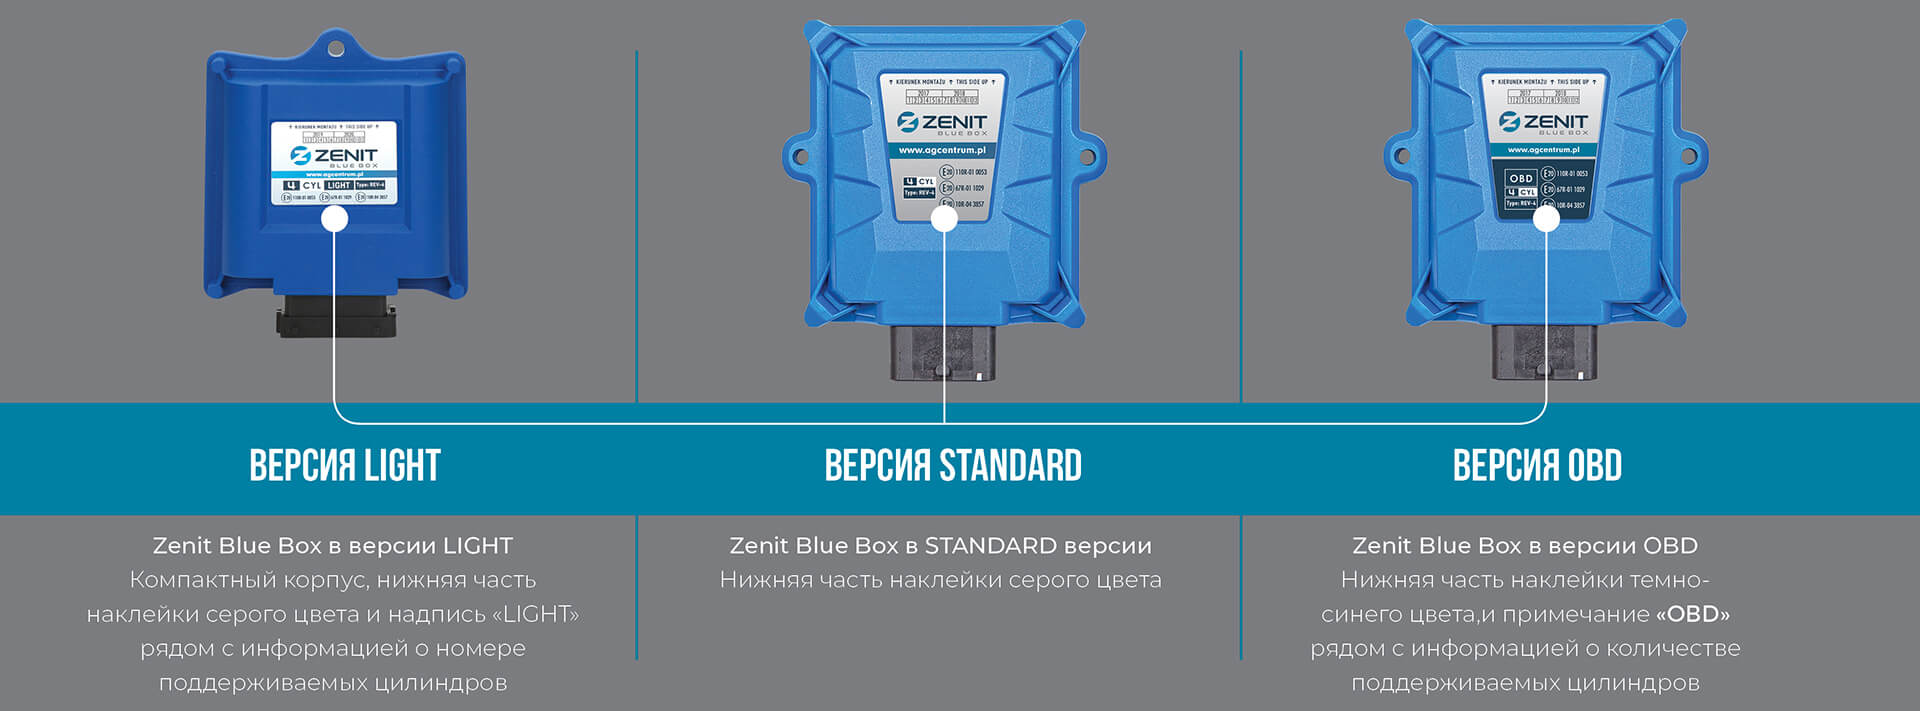 zenit blue box light autogas